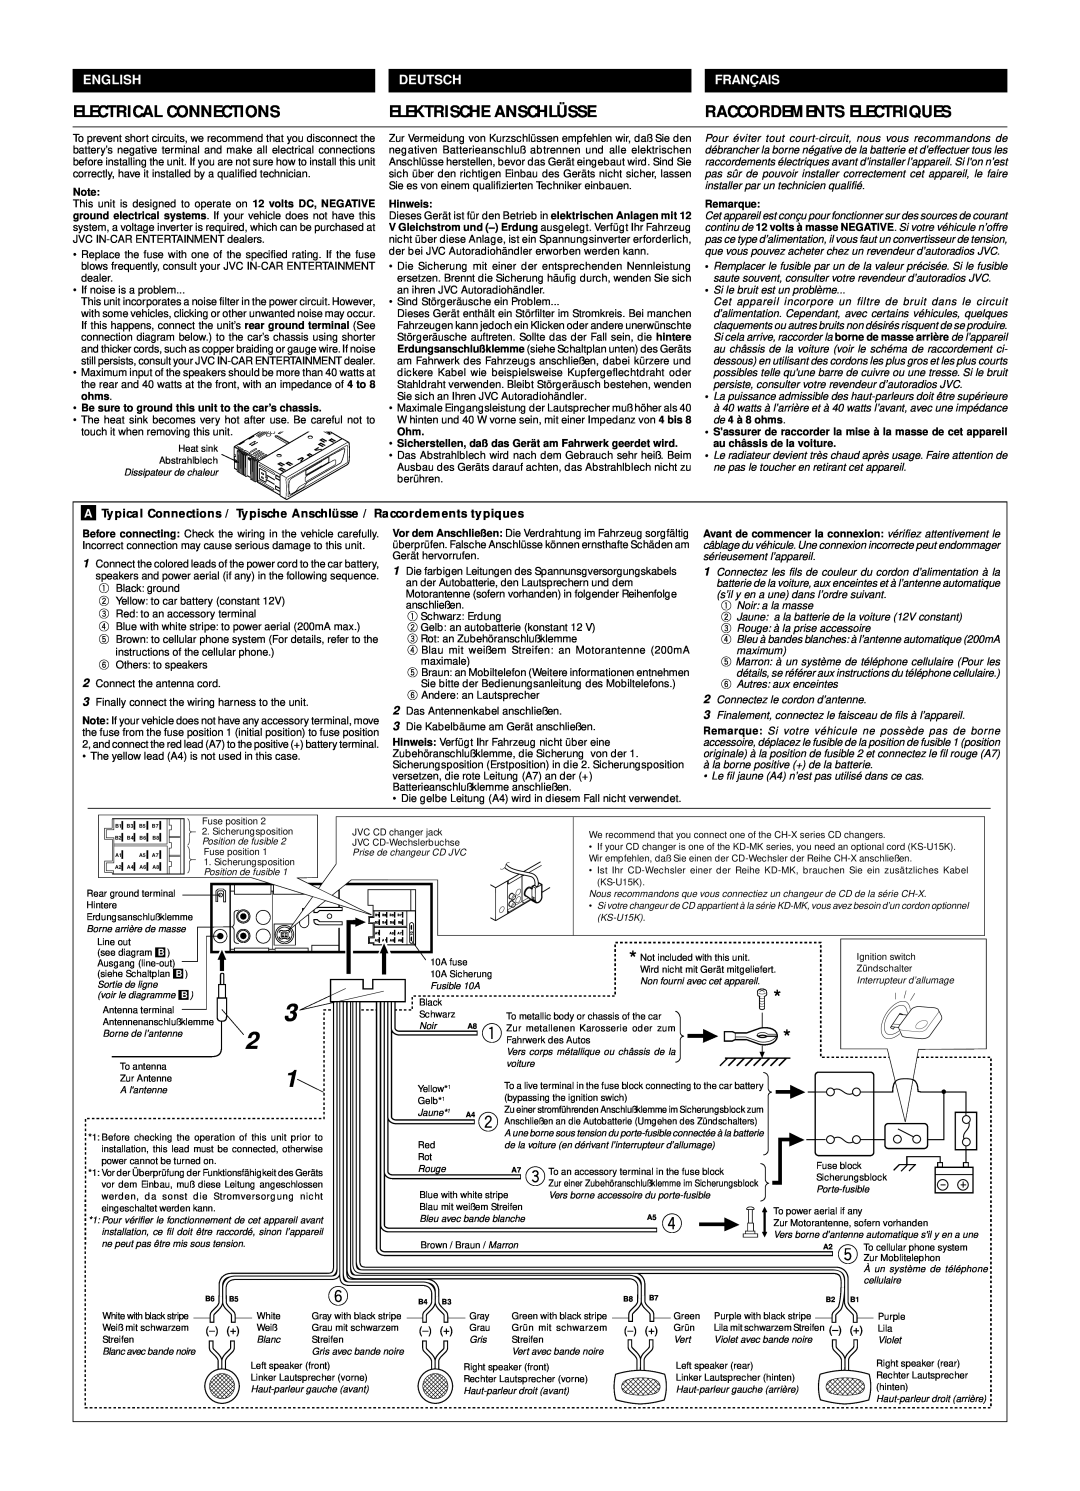 JVC KS-FX463R manual Electrical Connections, Elektrische Anschlüsse, Raccordements Electriques, English, Deutsch, Franç Ais 